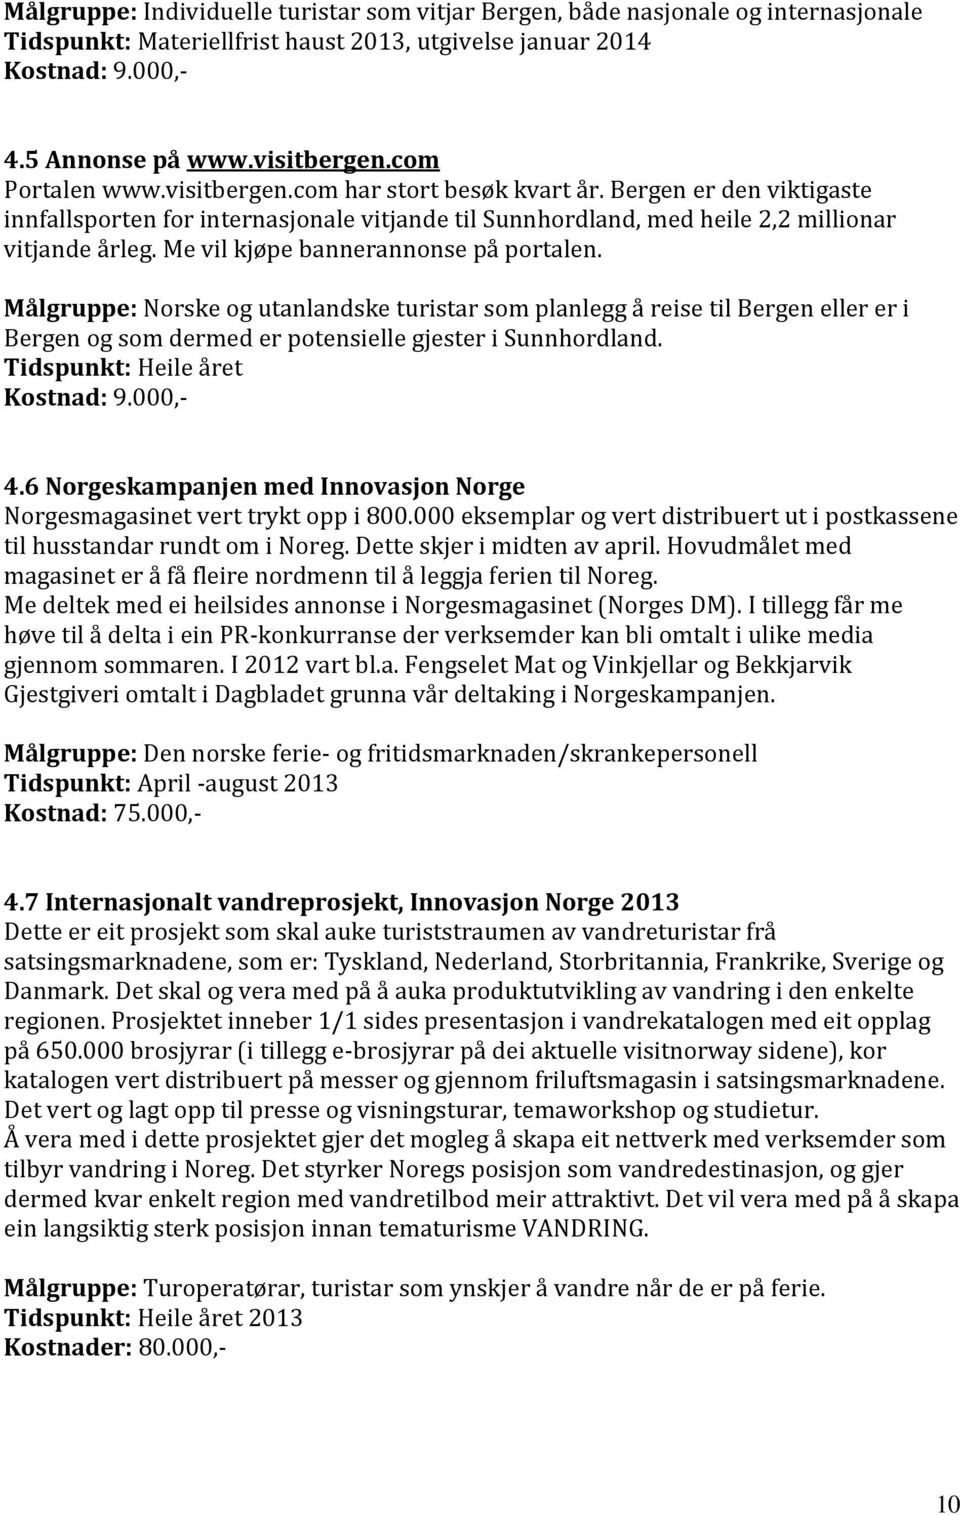 Me vil kjøpe bannerannonse på portalen. Målgruppe: Norske og utanlandske turistar som planlegg å reise til Bergen eller er i Bergen og som dermed er potensielle gjester i Sunnhordland. Kostnad: 9.